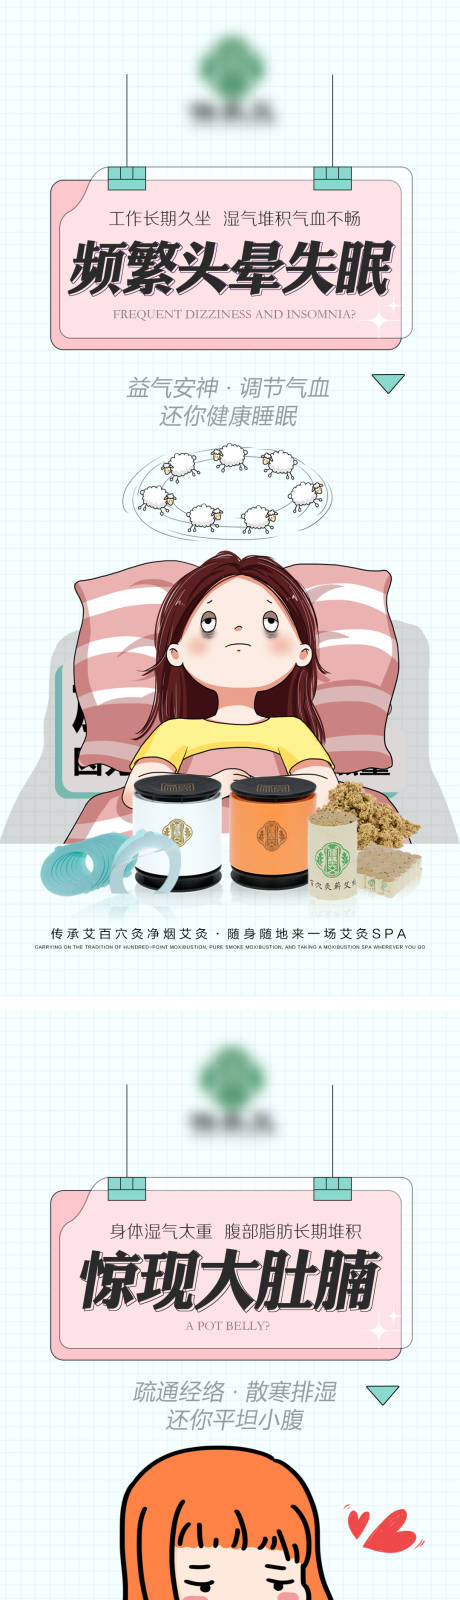 中医艾灸微商创意产品海报